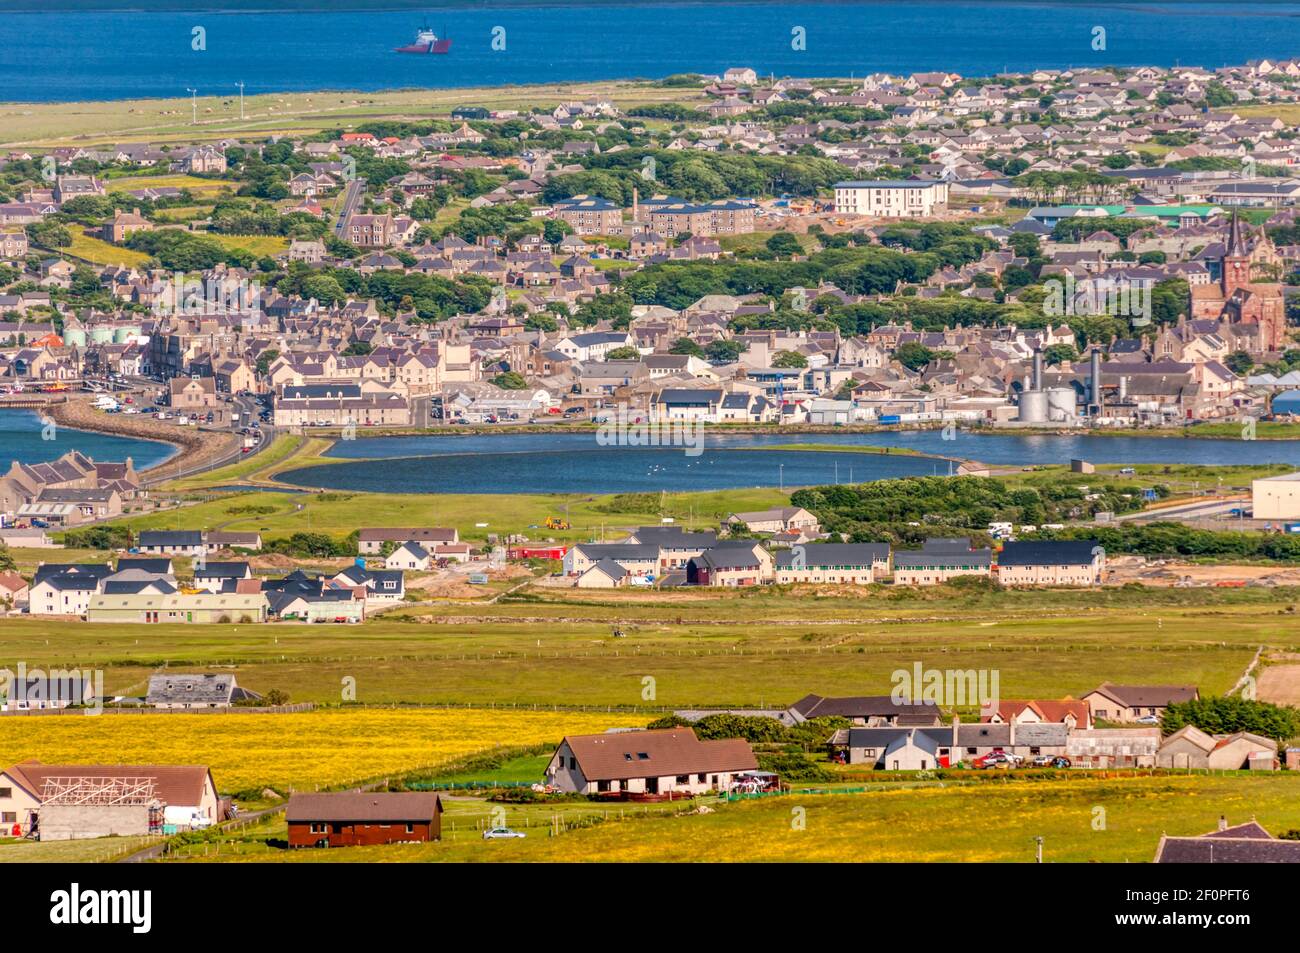 Eine erhöhte Ansicht von Kirkwall auf dem Festland, Orkney mit dem Peedie Meer in mittlerer Entfernung. Kirkwall ist die größte Stadt auf Orkney. Stockfoto